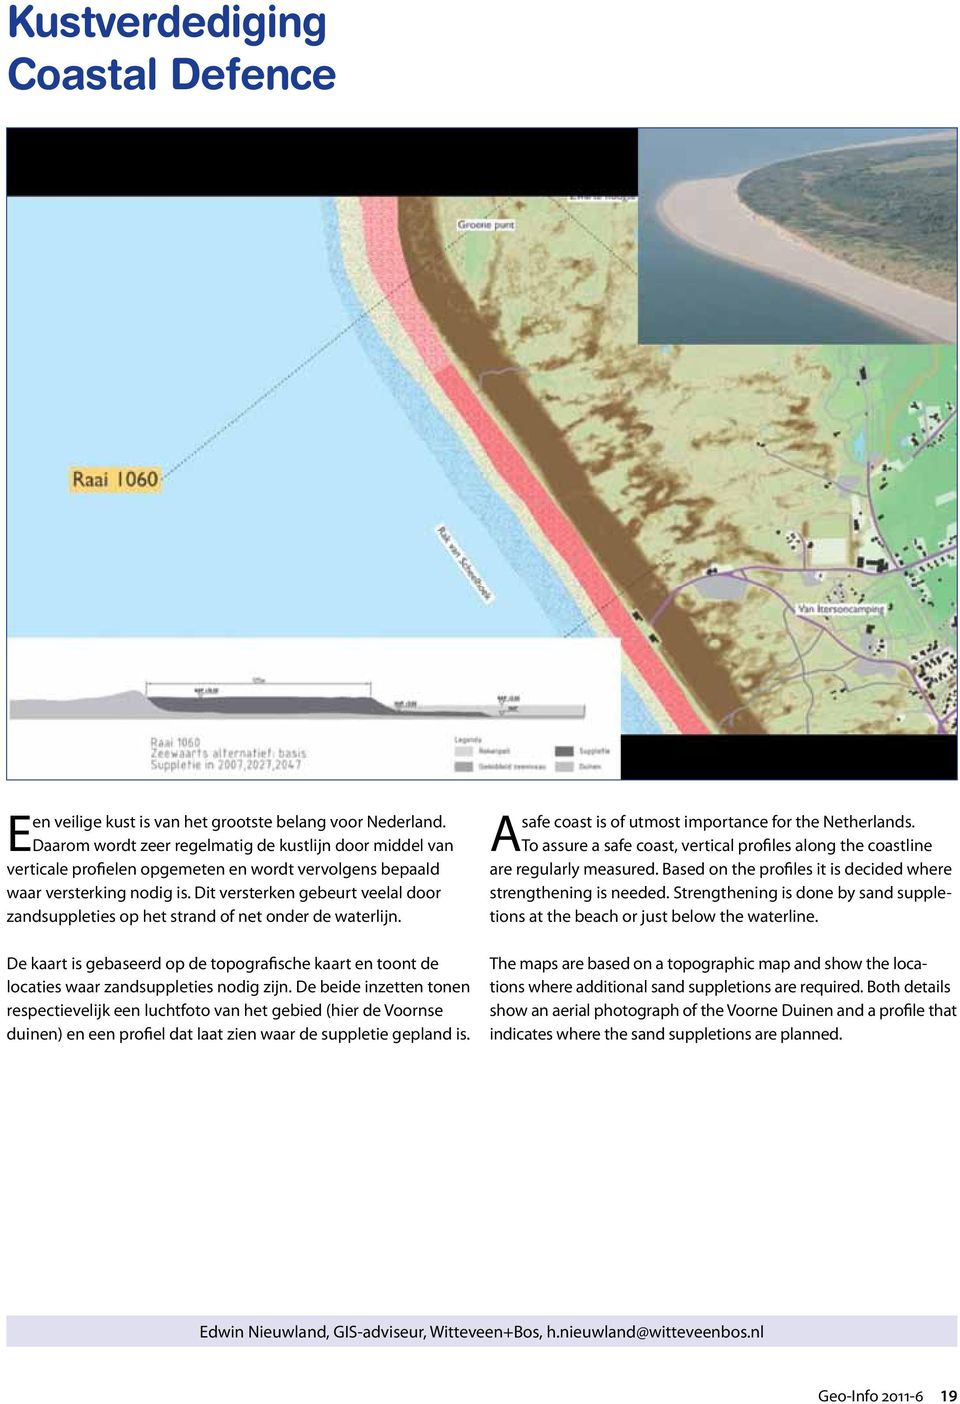 Dit versterken gebeurt veelal door zandsuppleties op het strand of net onder de waterlijn. De kaart is gebaseerd op de topografische kaart en toont de locaties waar zandsuppleties nodig zijn.